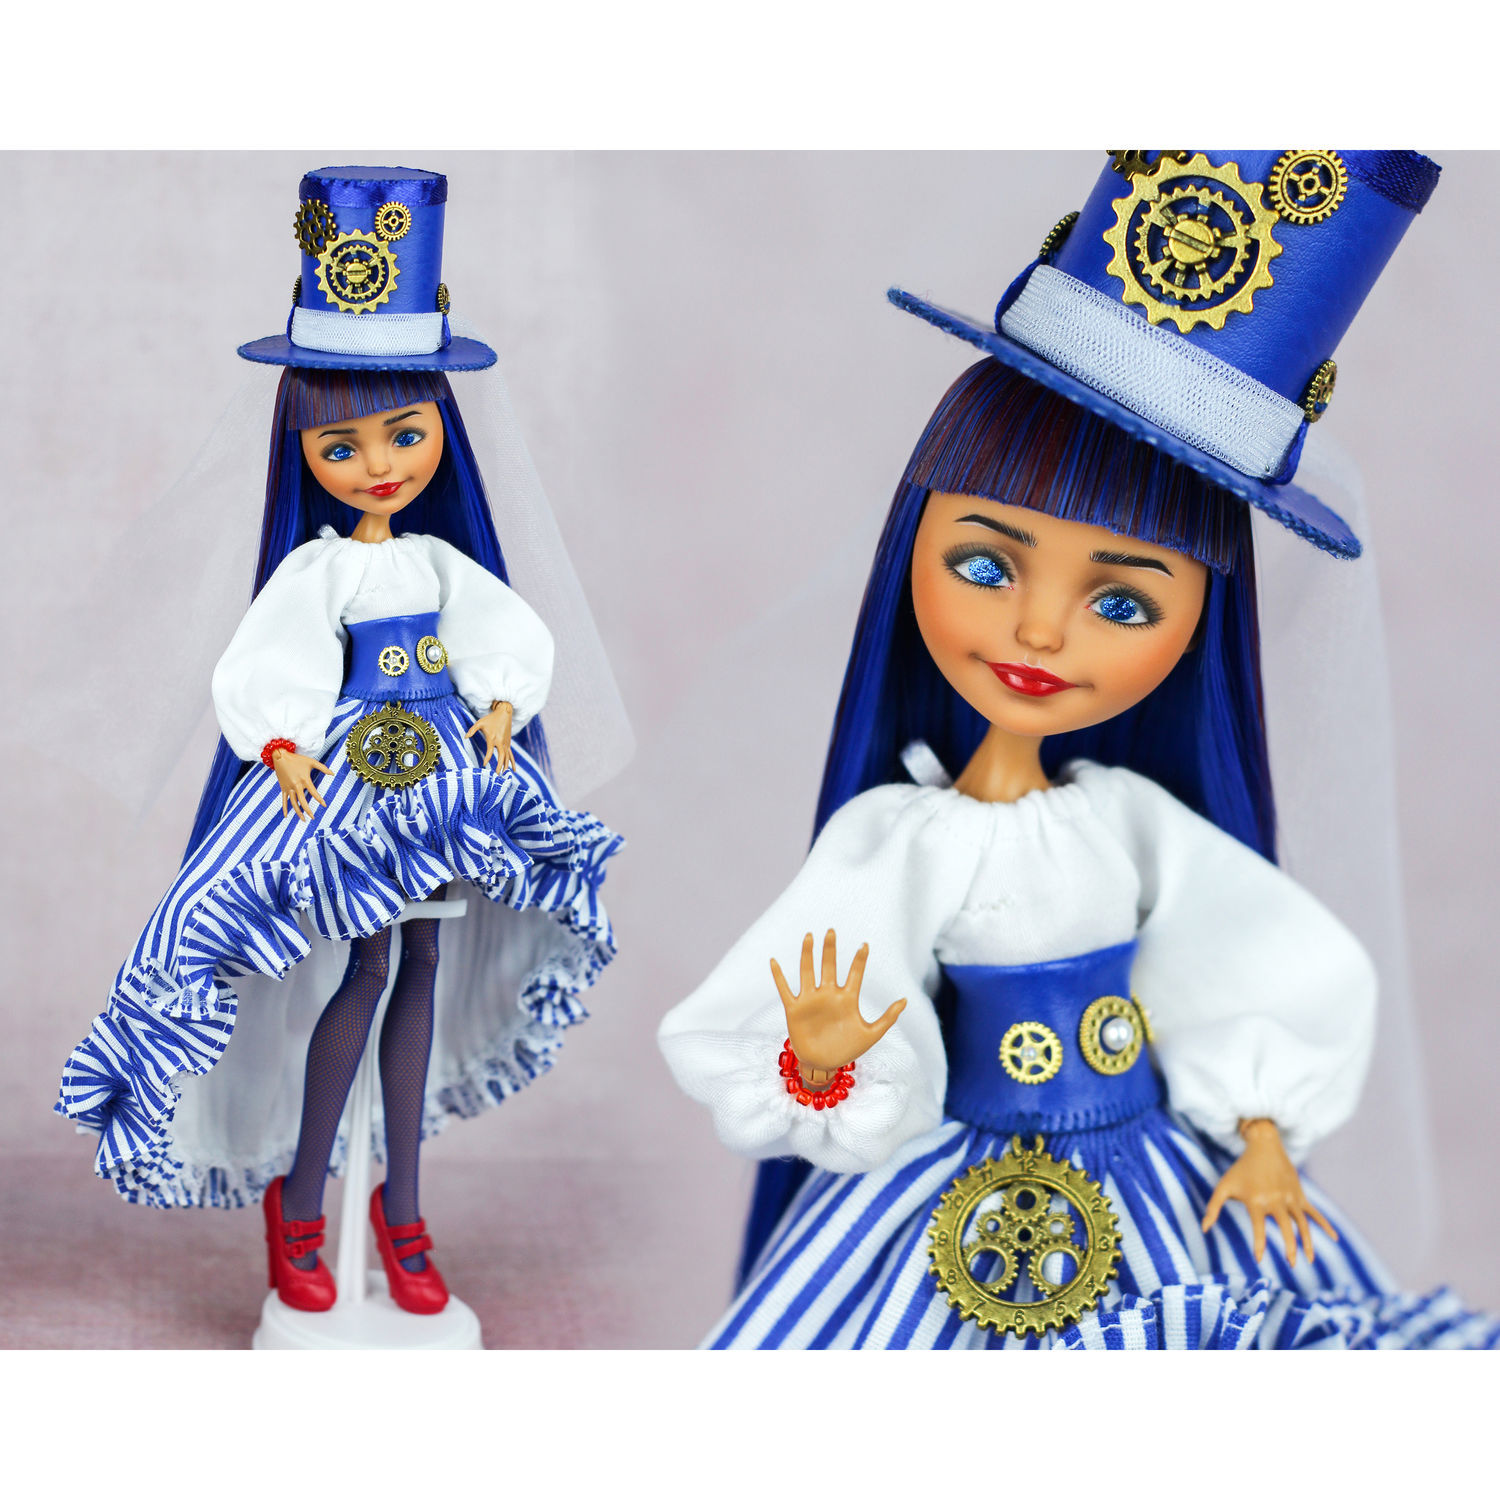 Куклы от Mattel в интернет-магазине MattelDolls